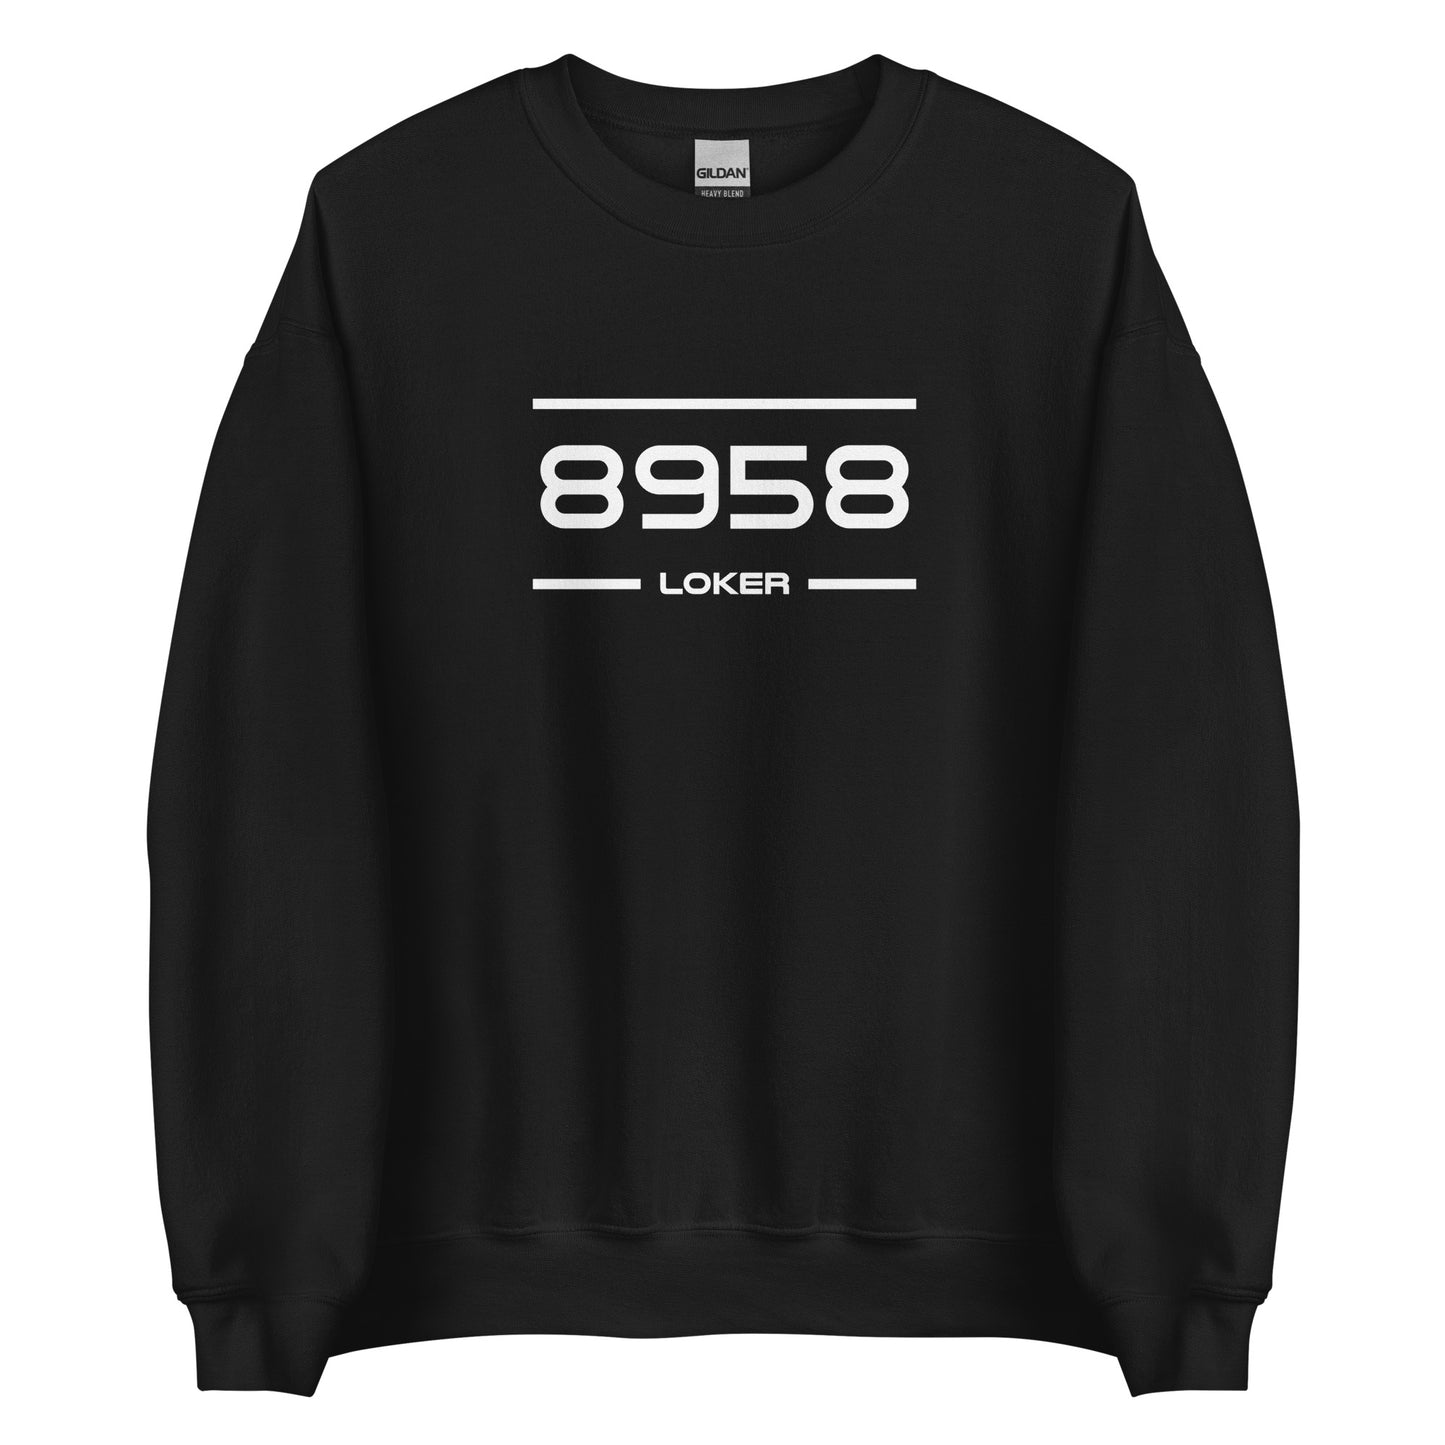 Sweater - 8958 - Loker (M/V)